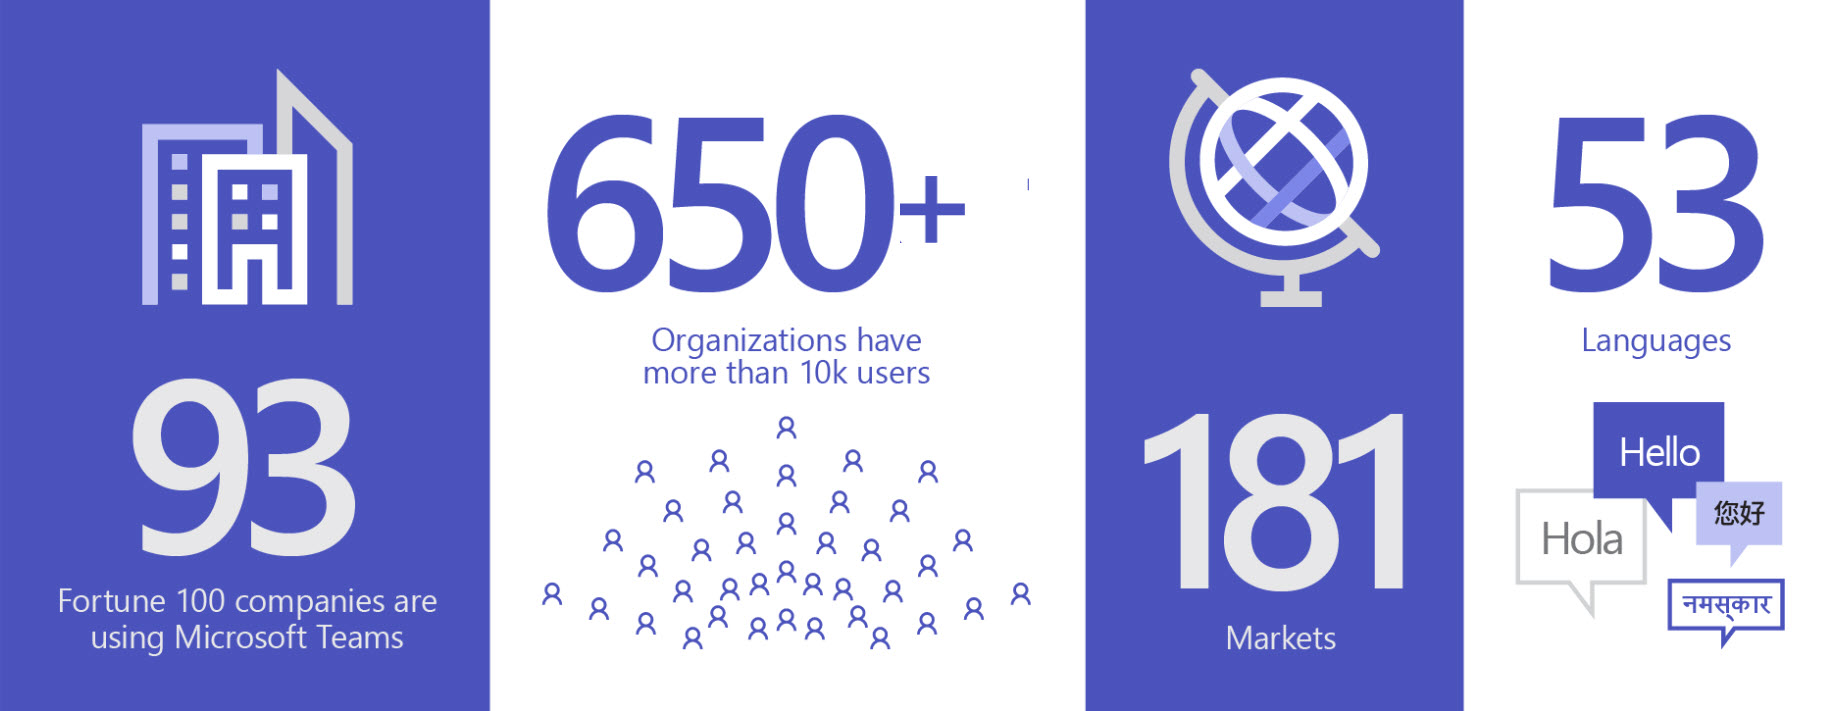 Die Abbildung zeigt, dass 93 Fortune-100-Unternehmen und mehr als 650 Unternehmenskunden mit mehr als 10.000 Mitarbeitern Teams in 181 Märkten und 53 Sprachen verwenden.